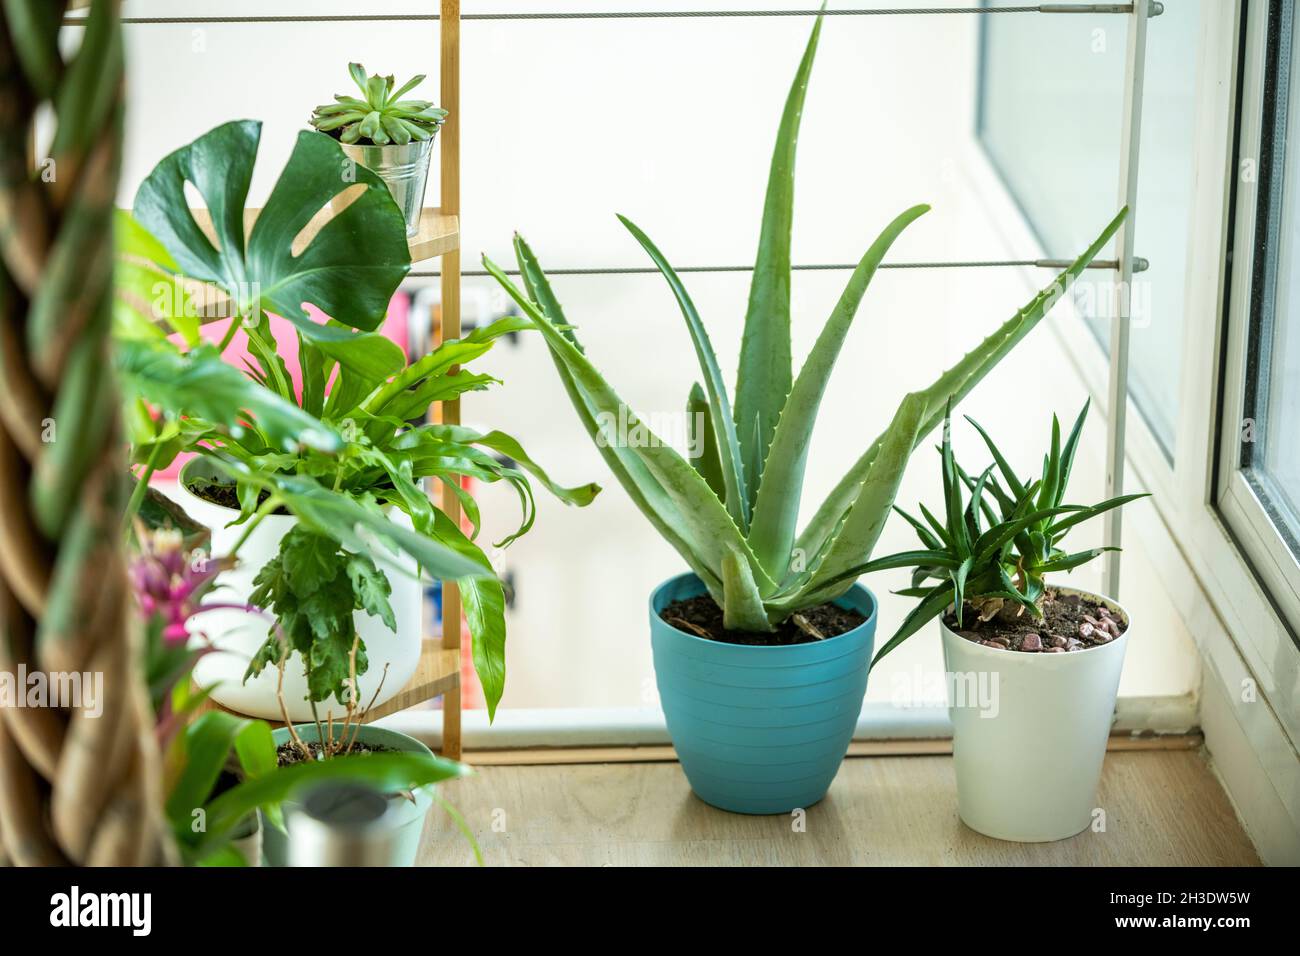 Hardy et de jolies plantes de maison, aloès, pachira, broméliades dans l'appartement Banque D'Images